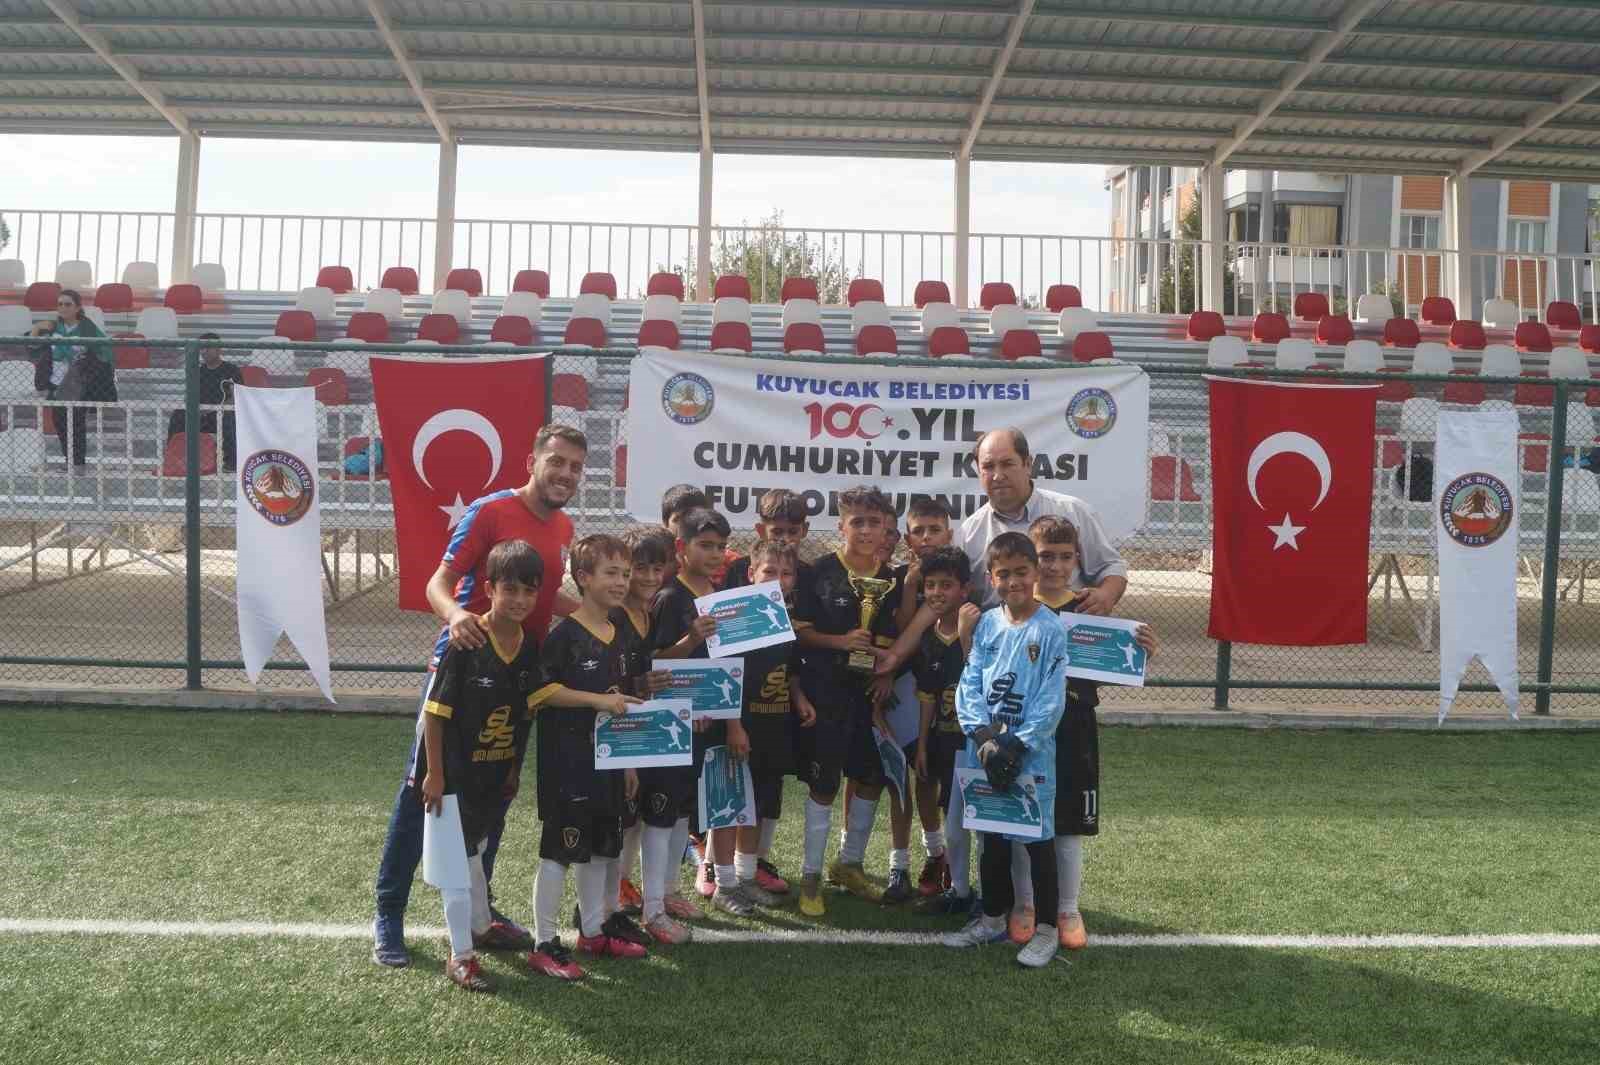 Kuyucak’ta Cumhuriyet Kupası Futbol Turnuvası düzenlendi